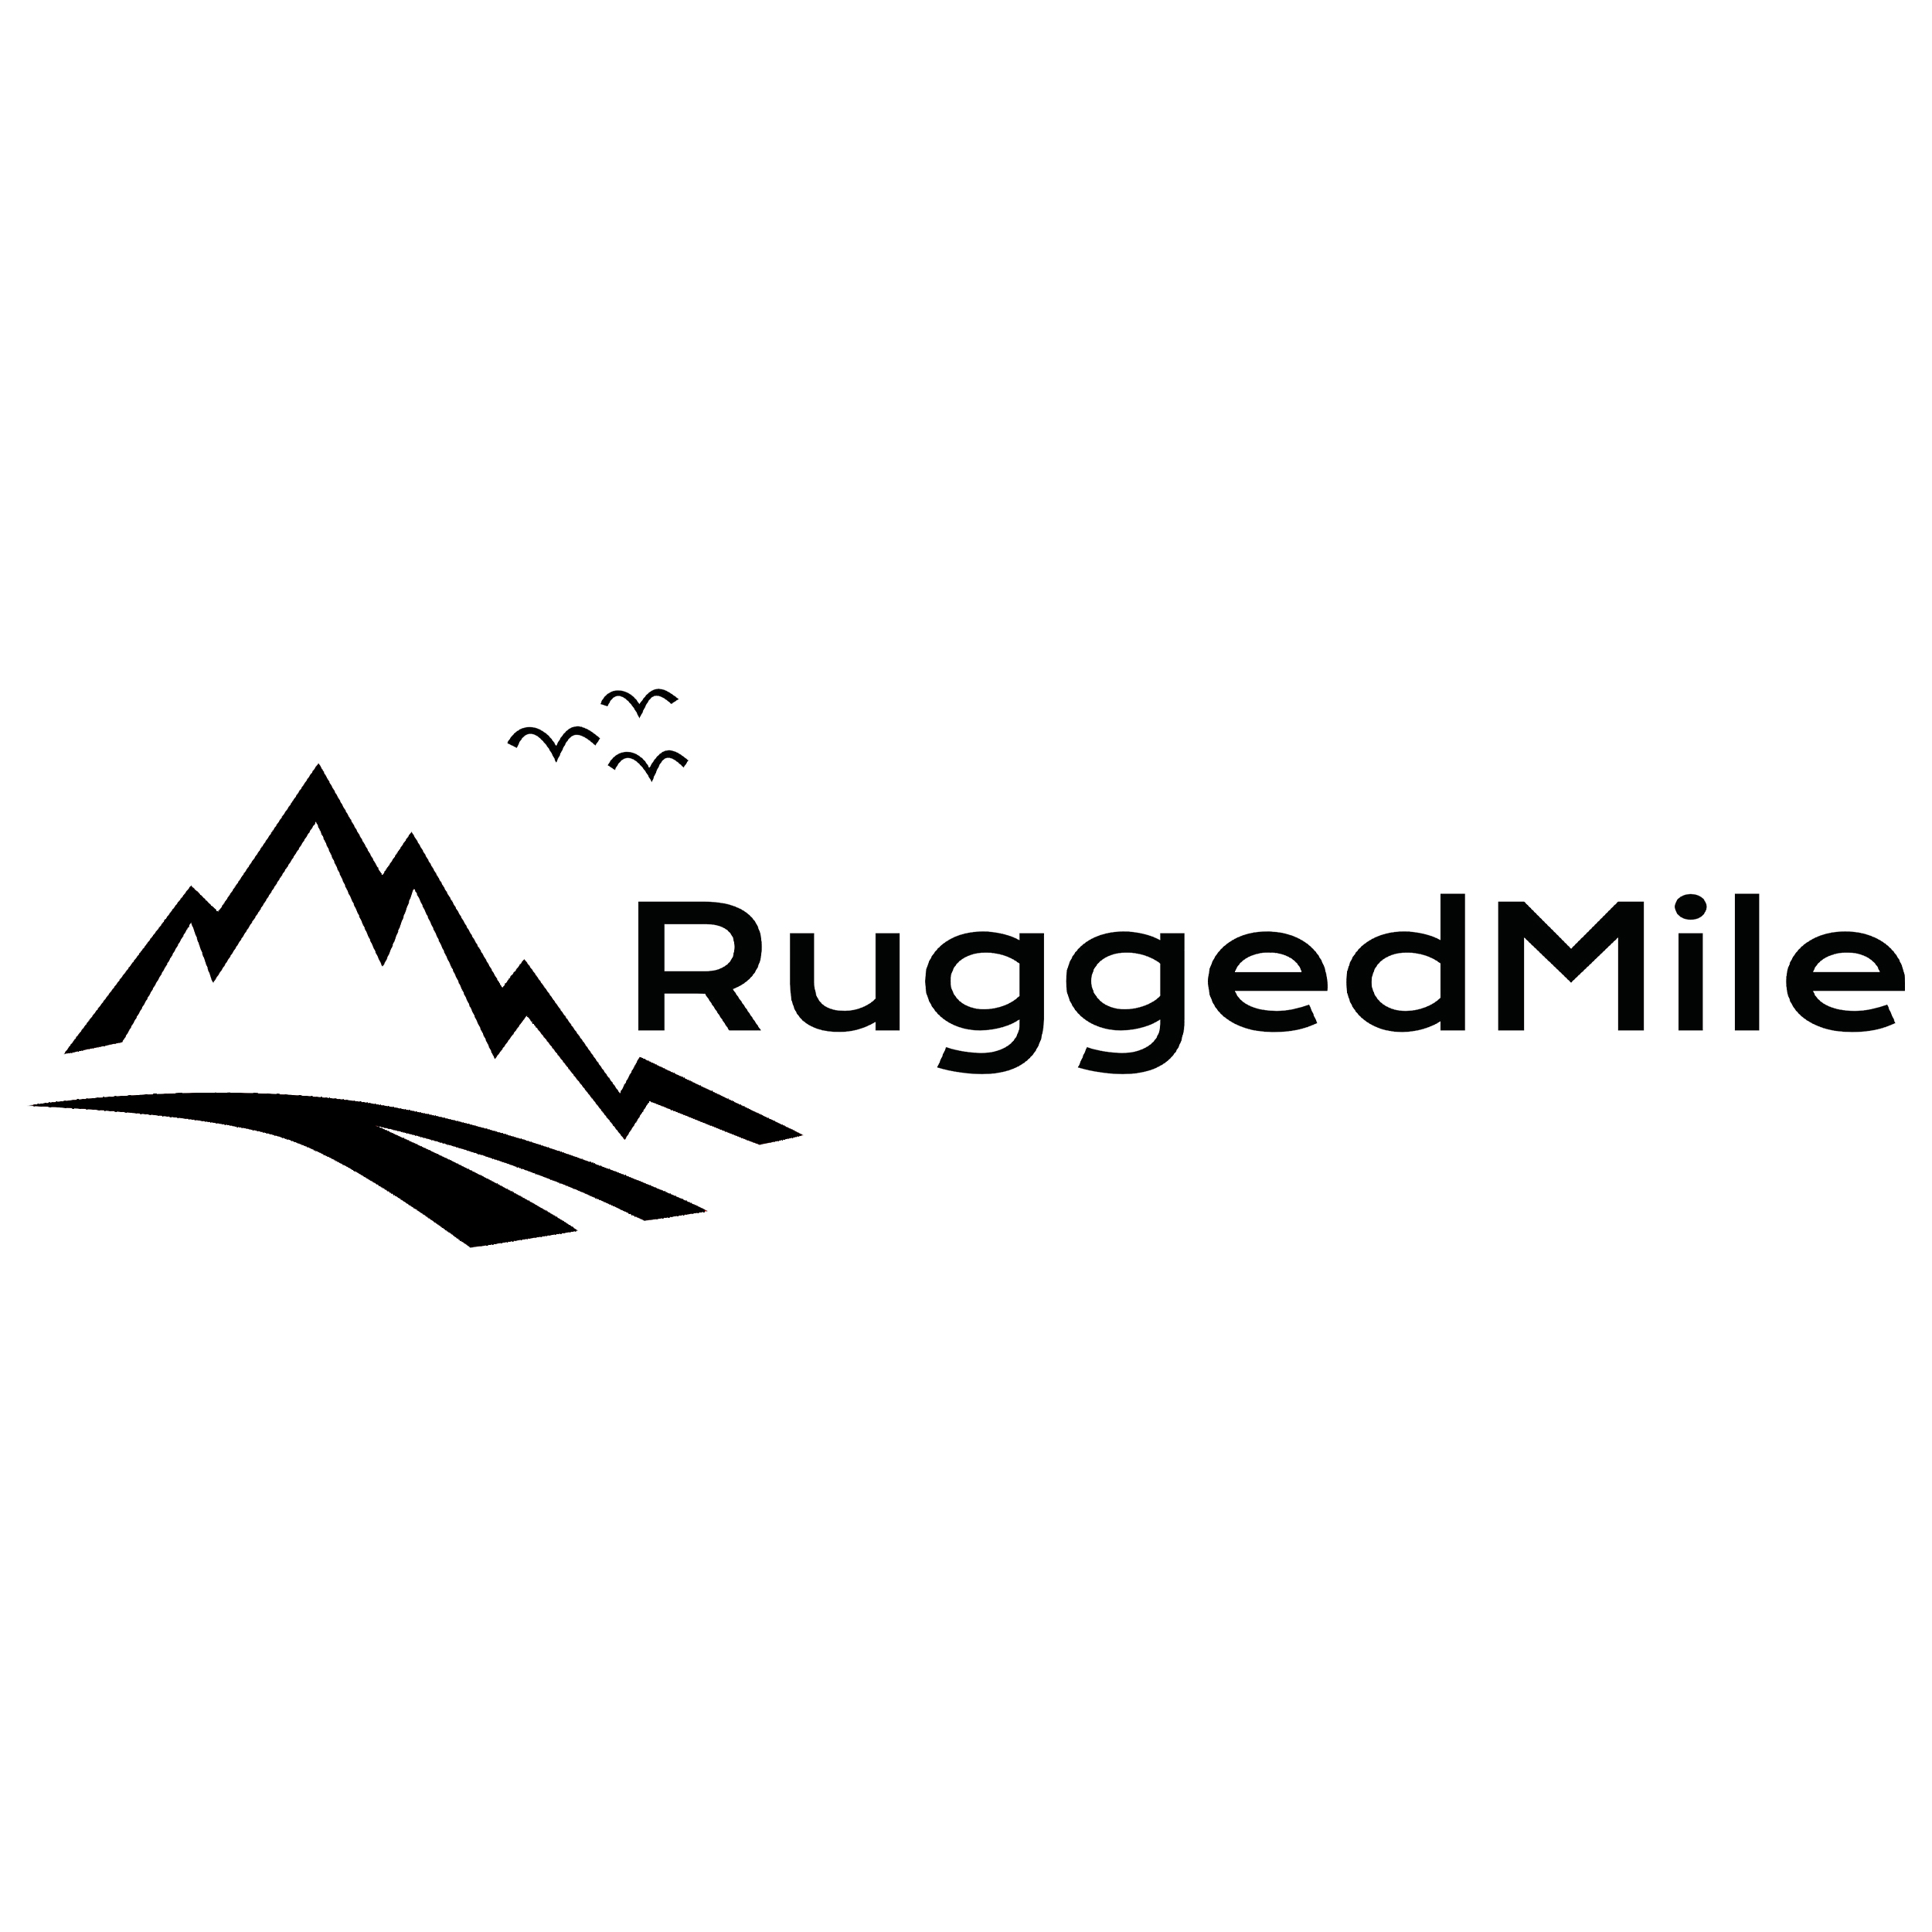 Rugged Mile